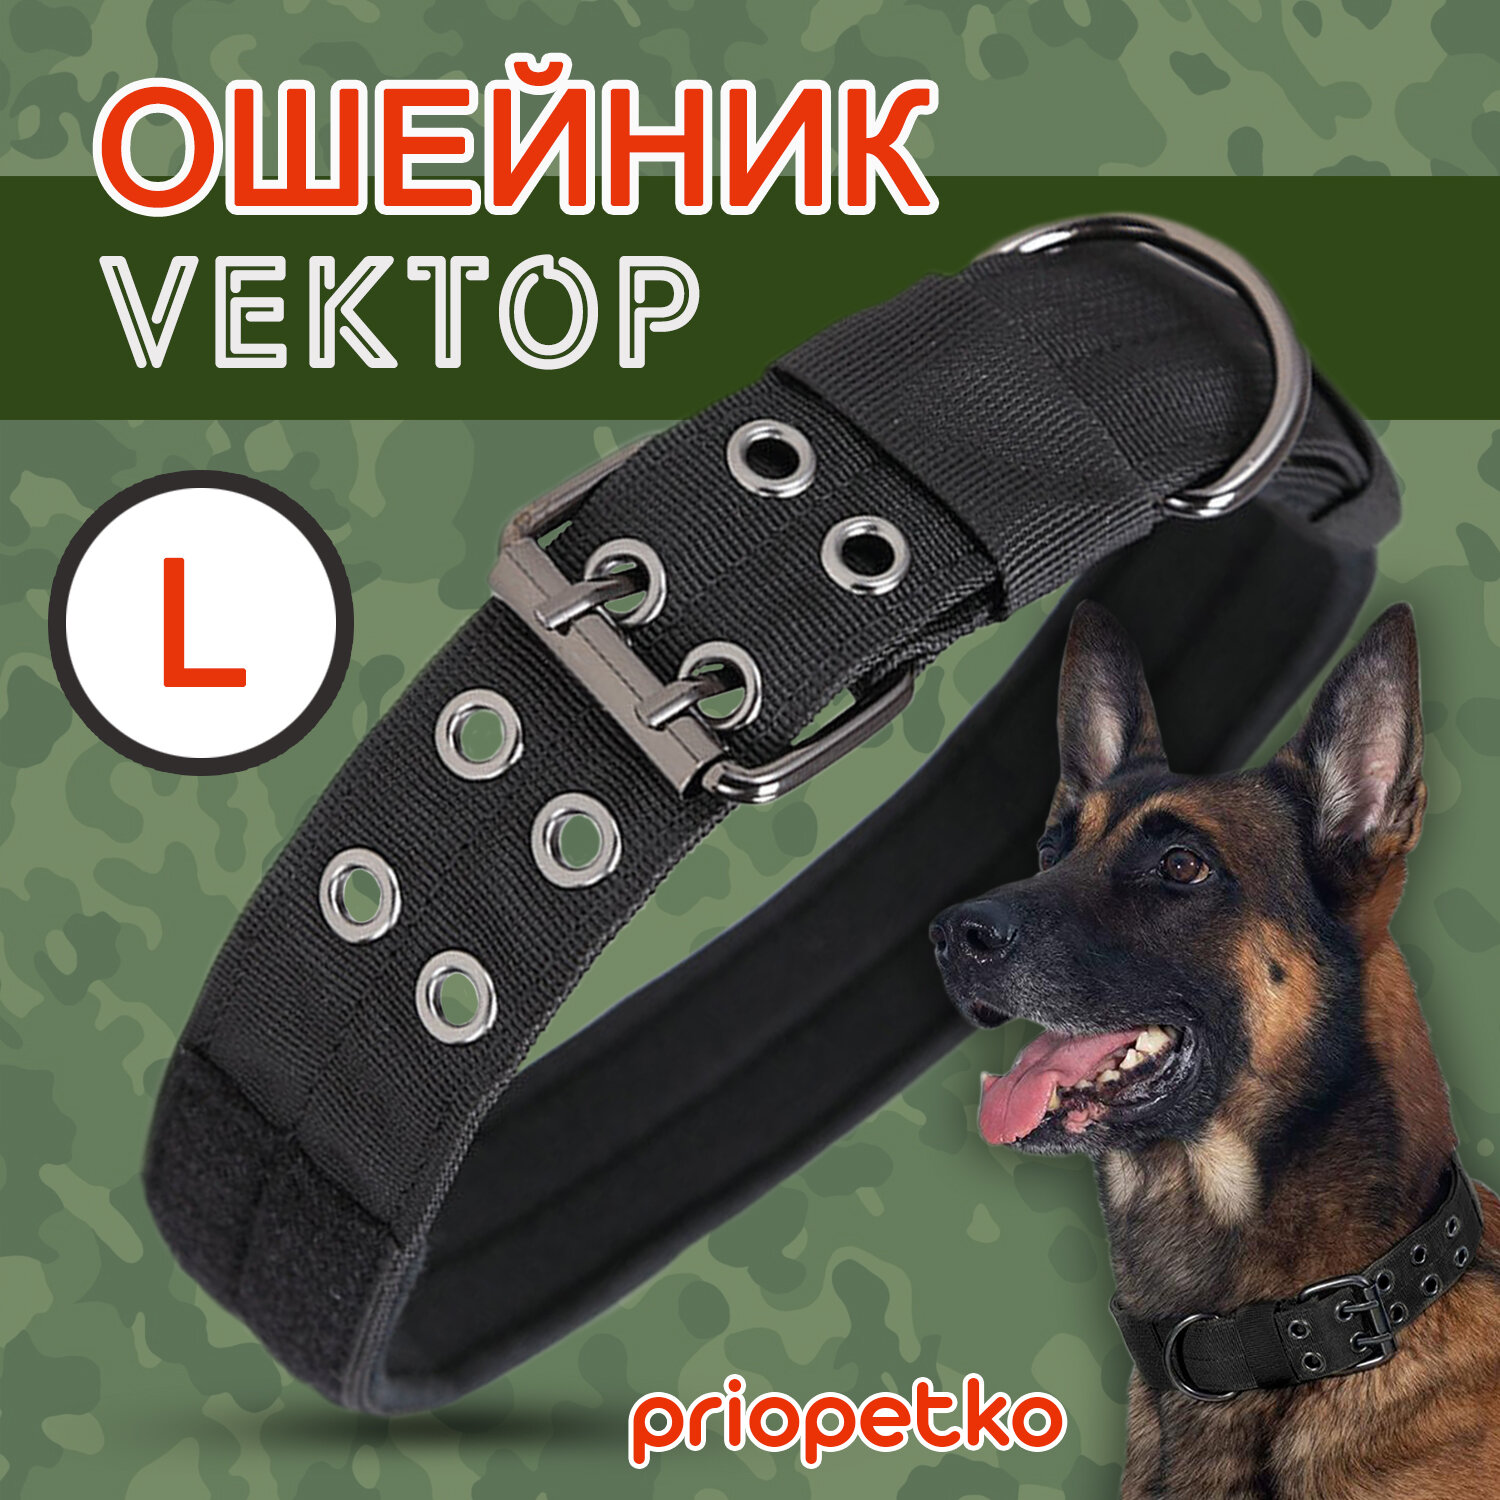 Ошейник (размер L) для крупных и средних собак серии "Вектор" (черный), Priopetko